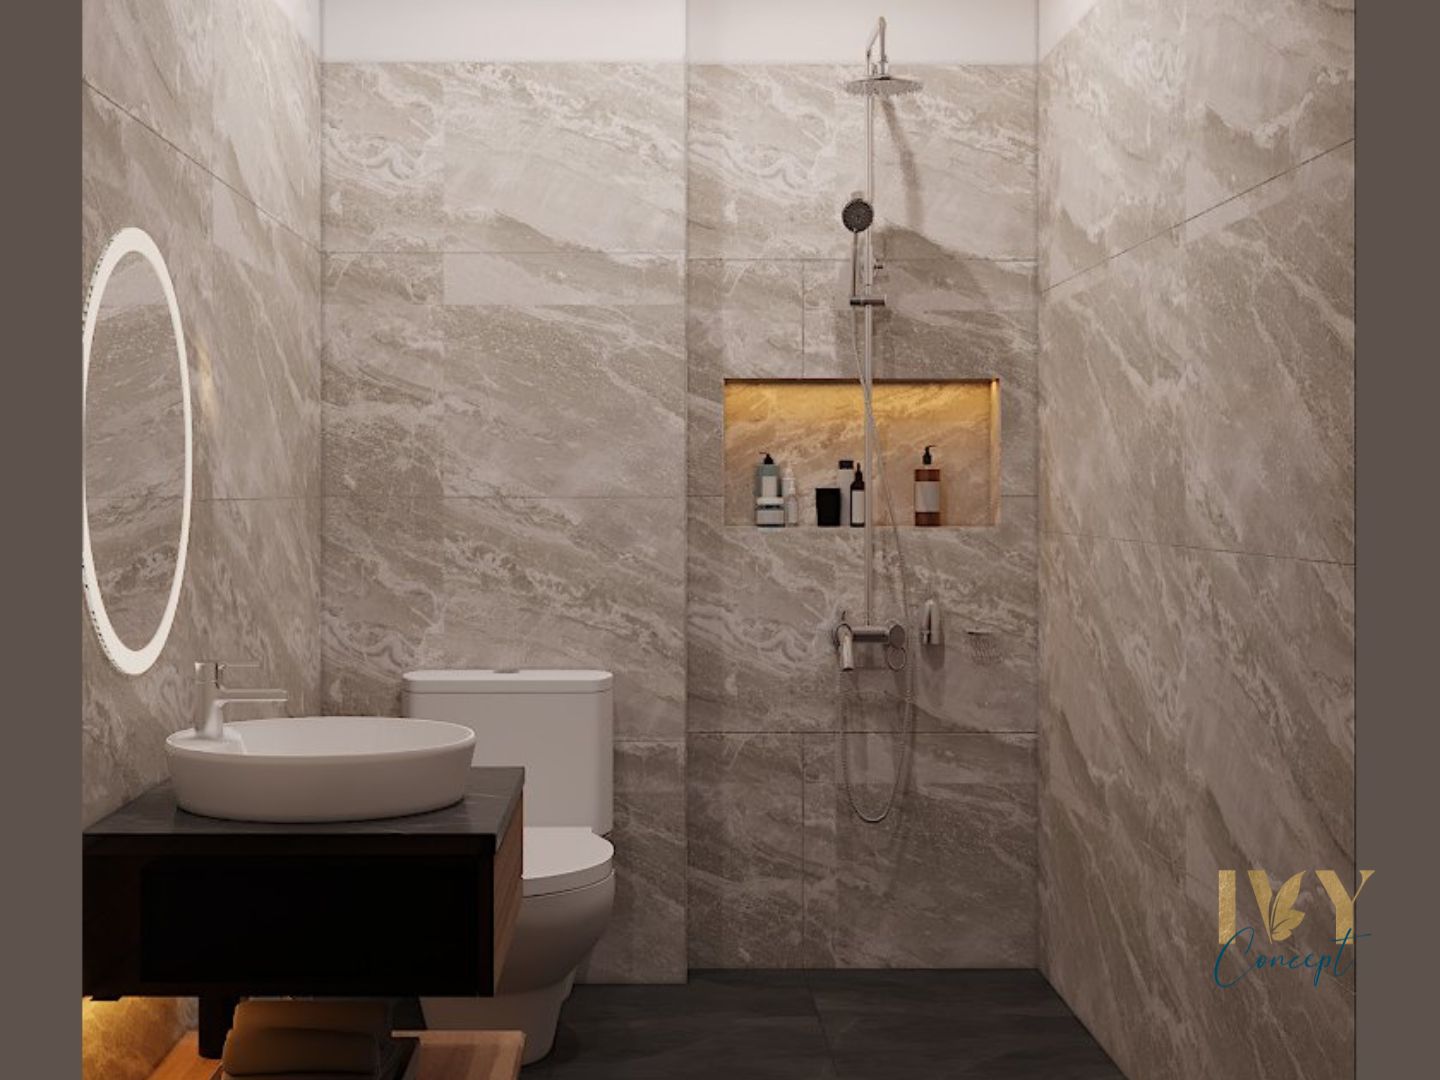 Phòng tắm, phong cách Hiện đại Modern, thiết kế concept nội thất, nhà phố Quận 7